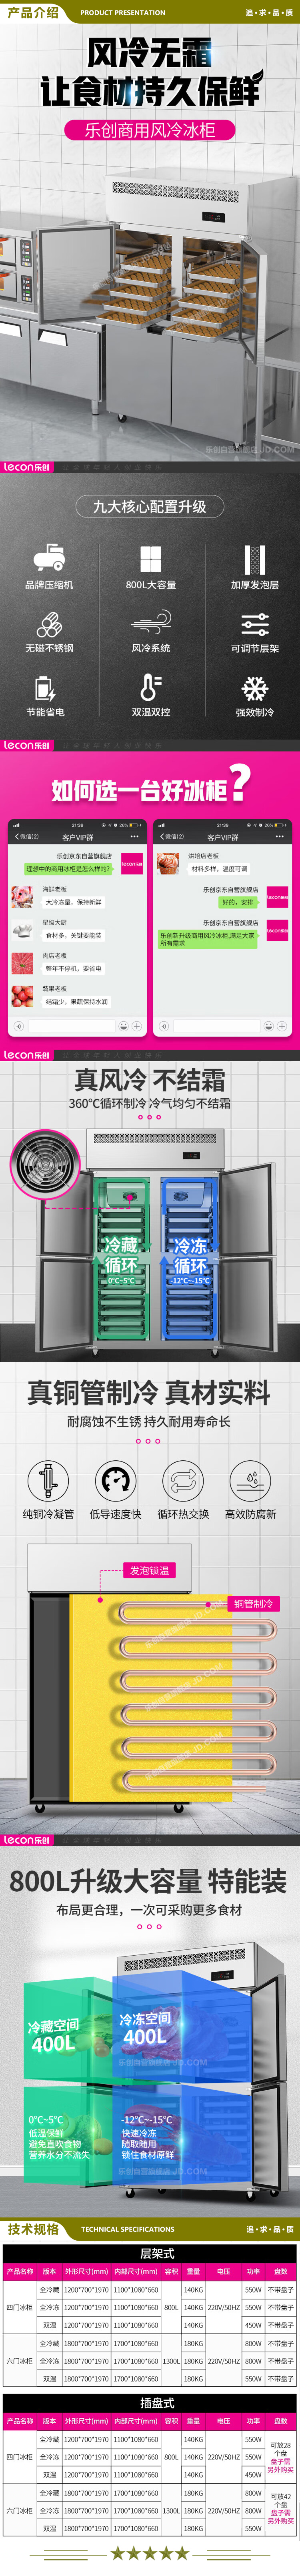 乐创(lecon) LC-LMBG01 冷冻商用六门冰柜厨房冰箱双温冷藏冷冻餐饮立式后厨保鲜柜冷柜风冷层架式  2.jpg